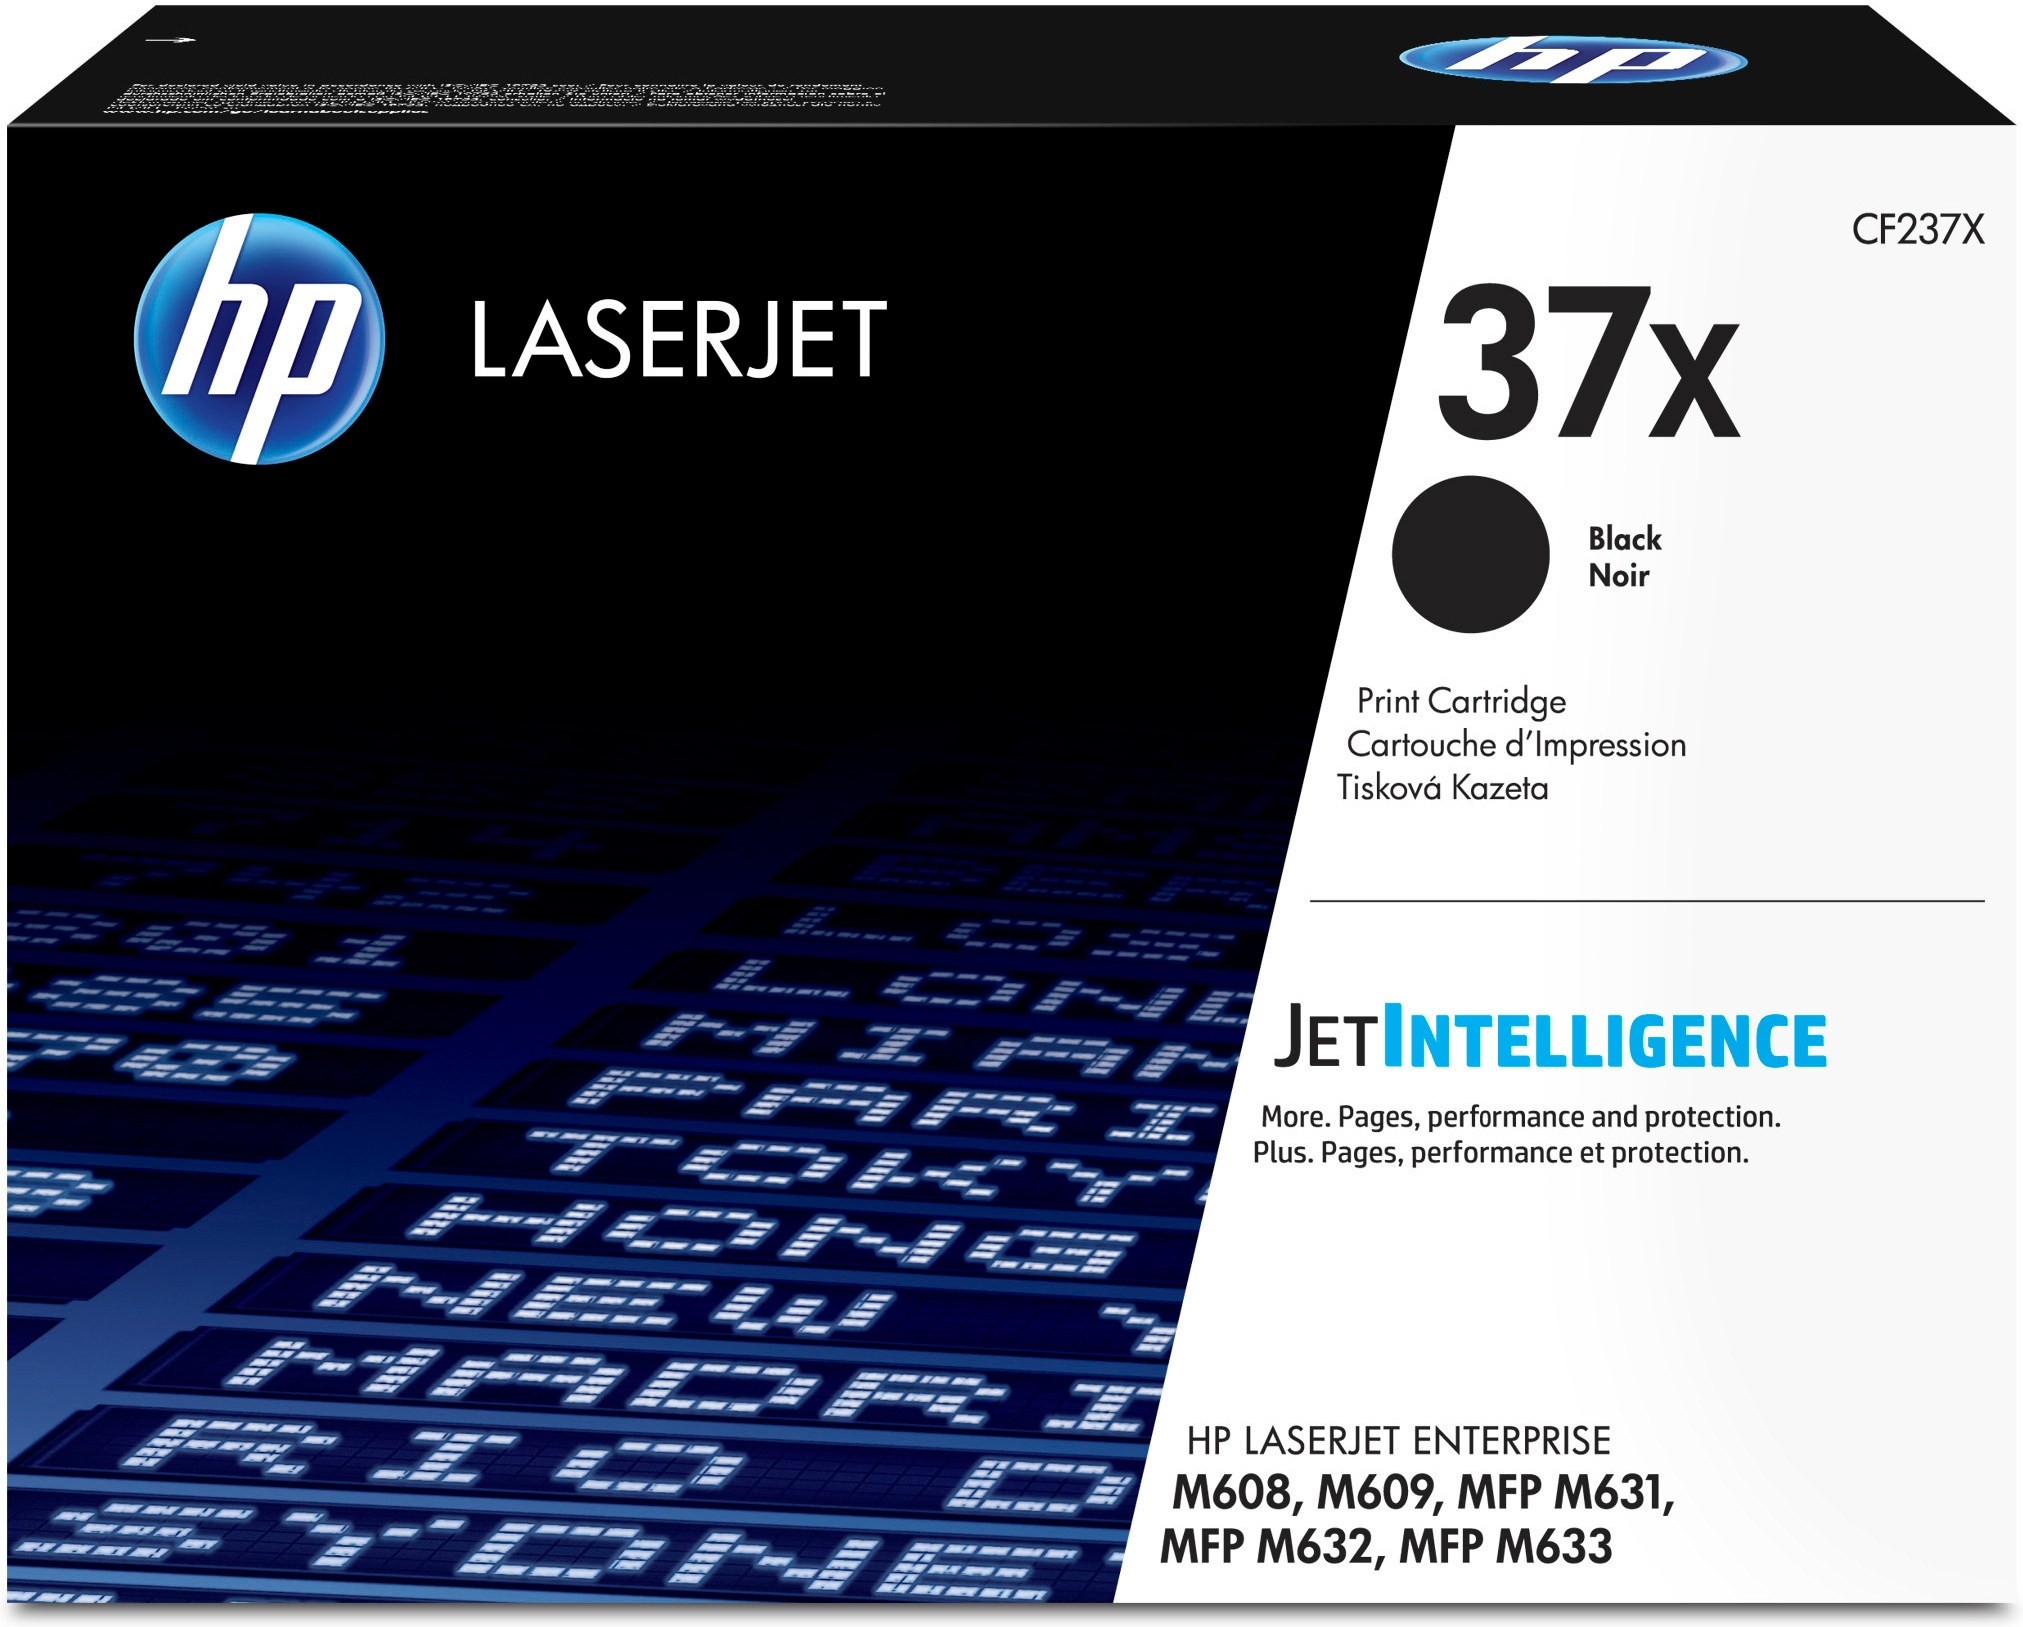 Bild von HP LaserJet 37X - Tonereinheit Original - Schwarz - 25.000 Seiten